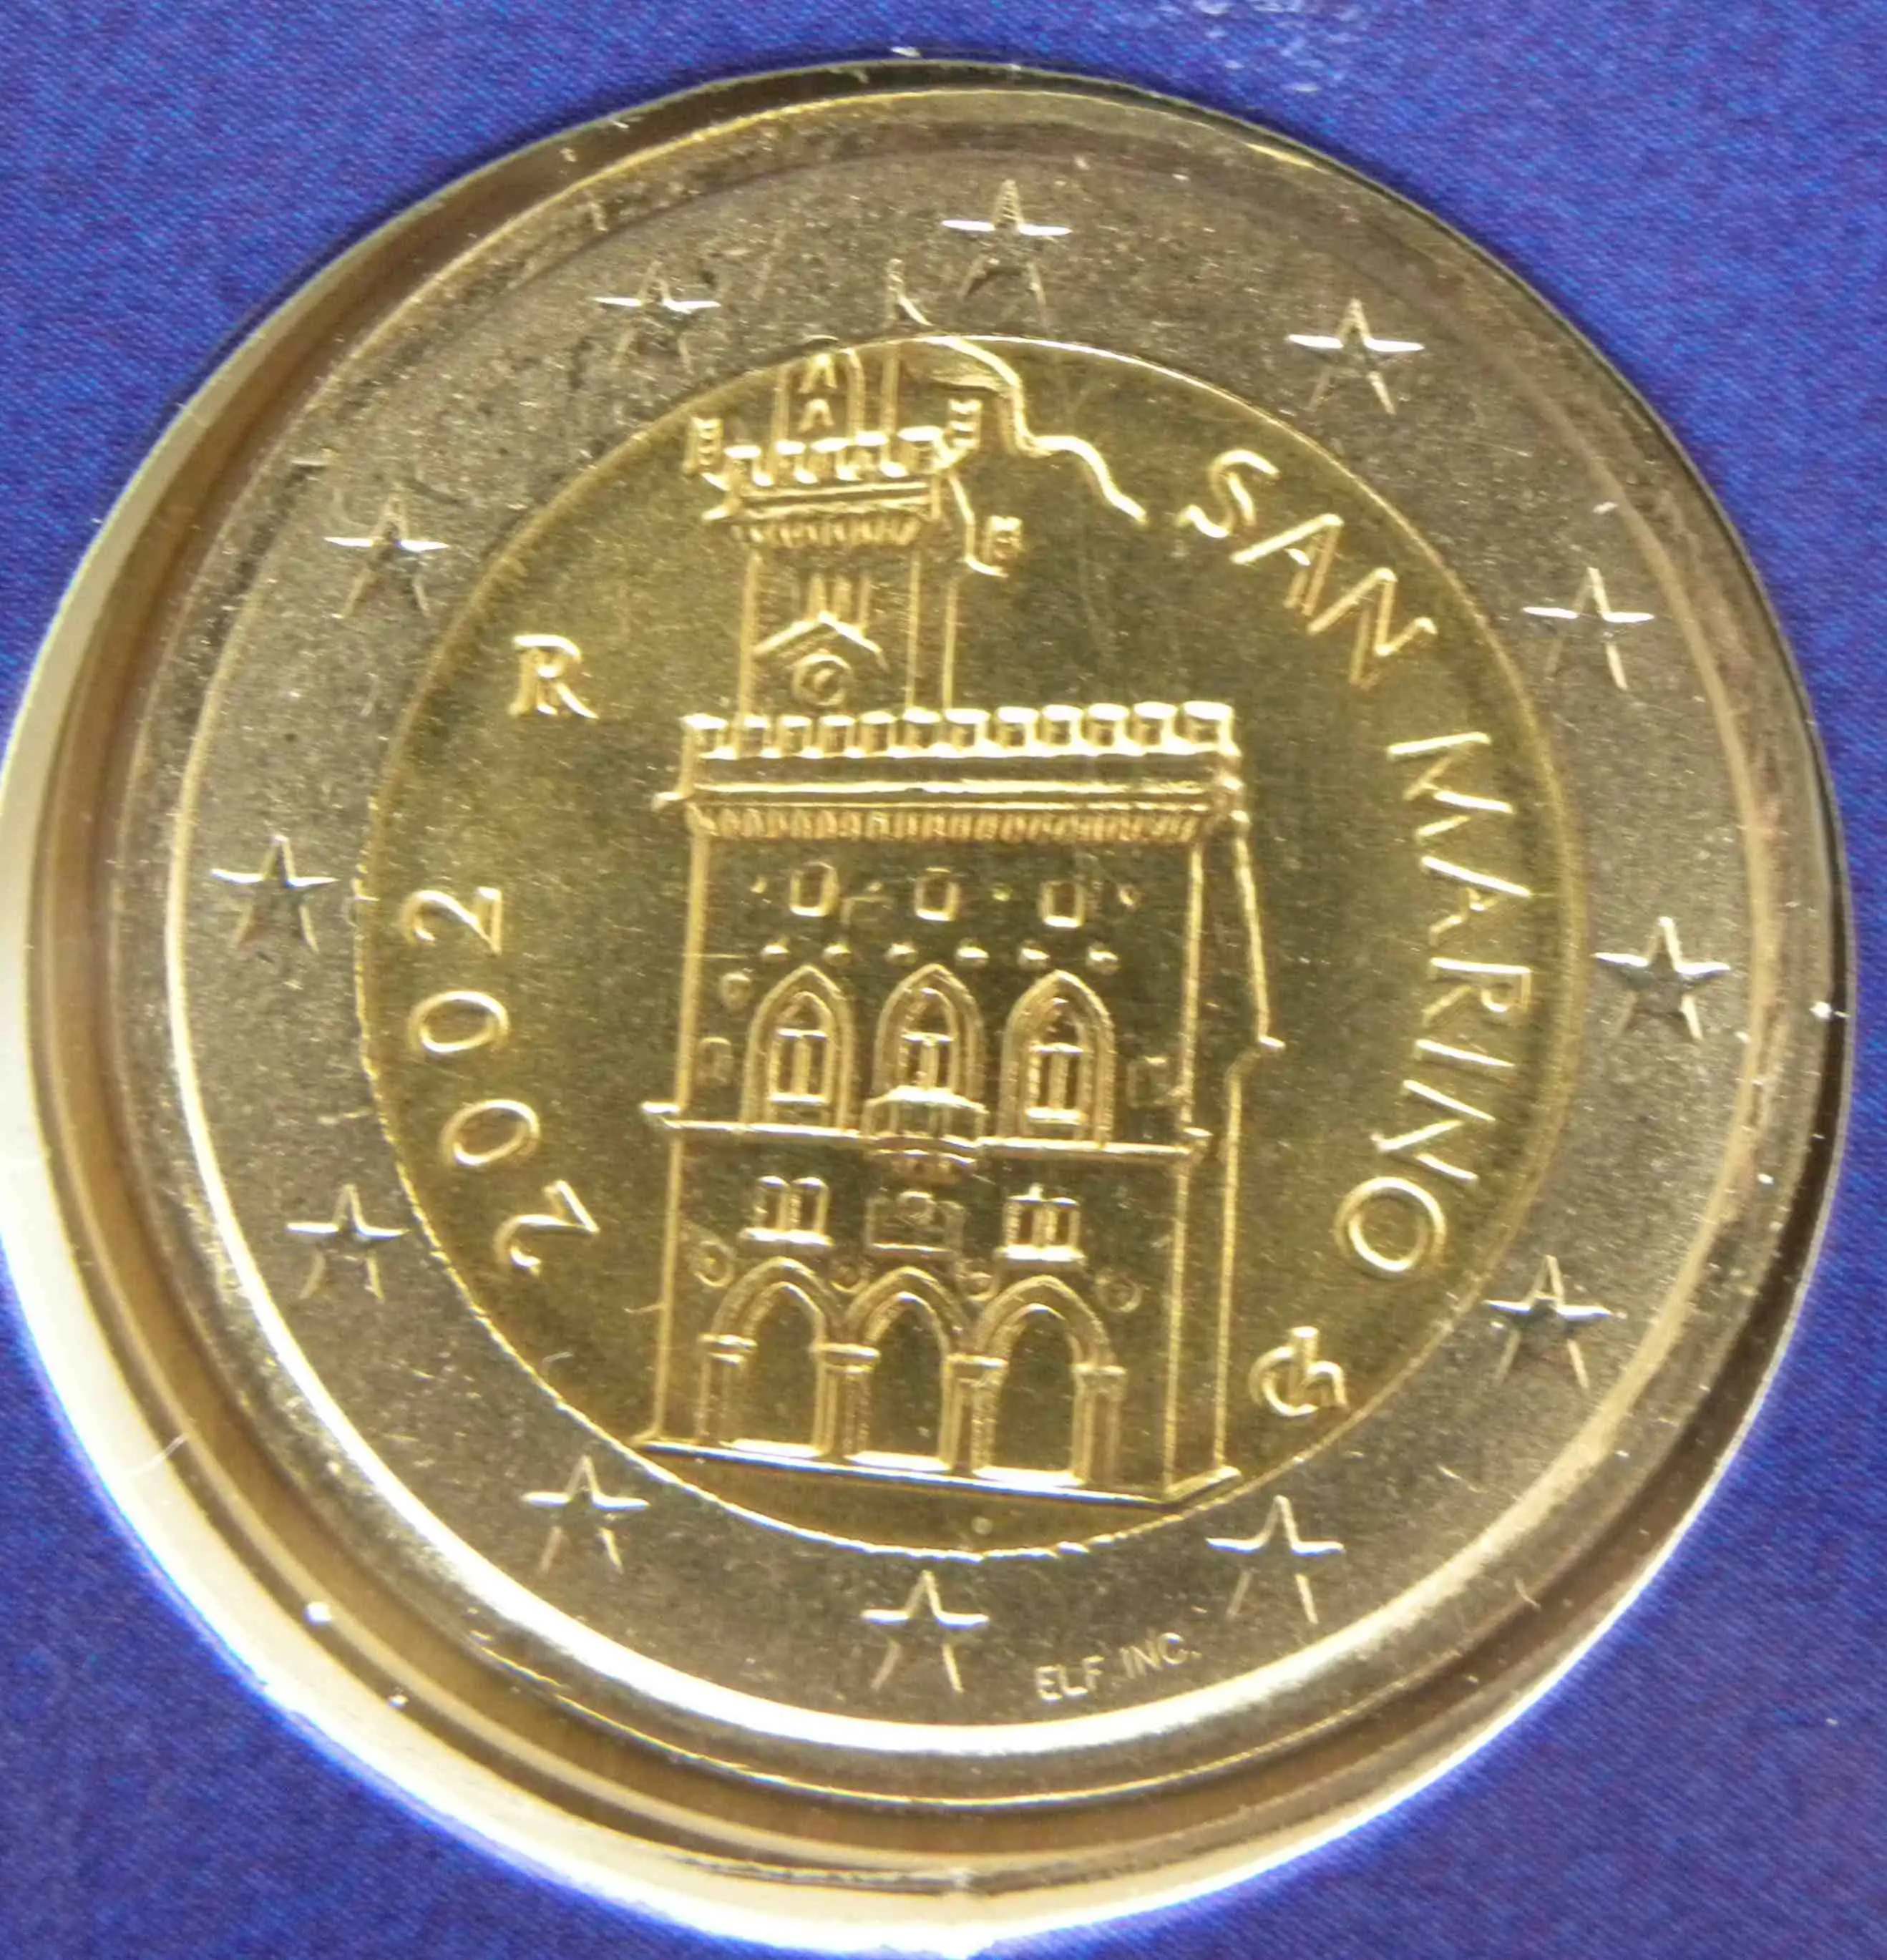 San Marino Euro Kursmünzen 2002 ᐅ Wert, Infos und Bilder bei euro